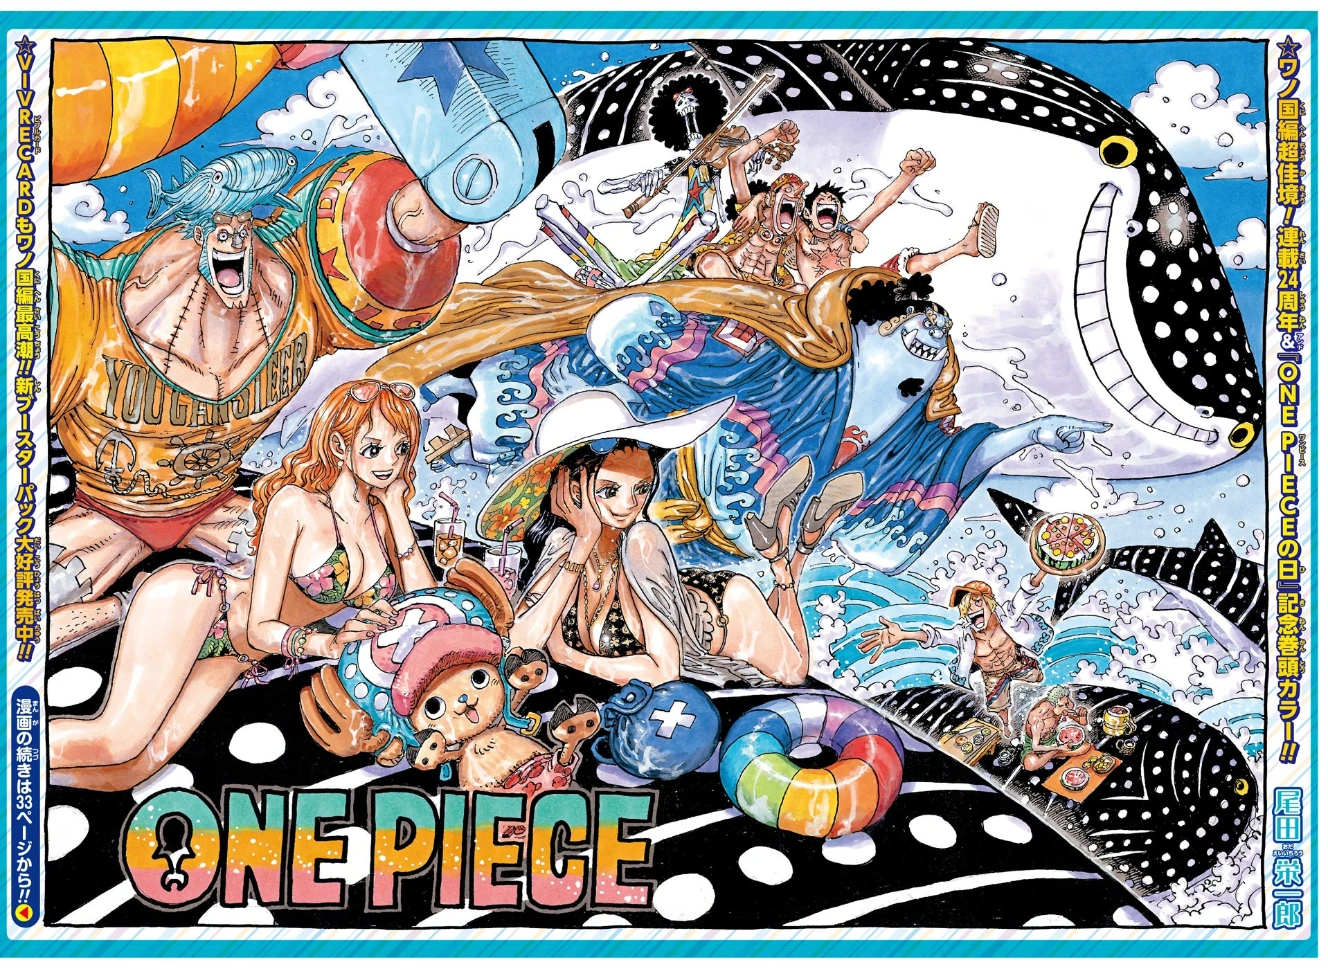 Specie animali/Saga del CP9, One Piece Wiki Italia